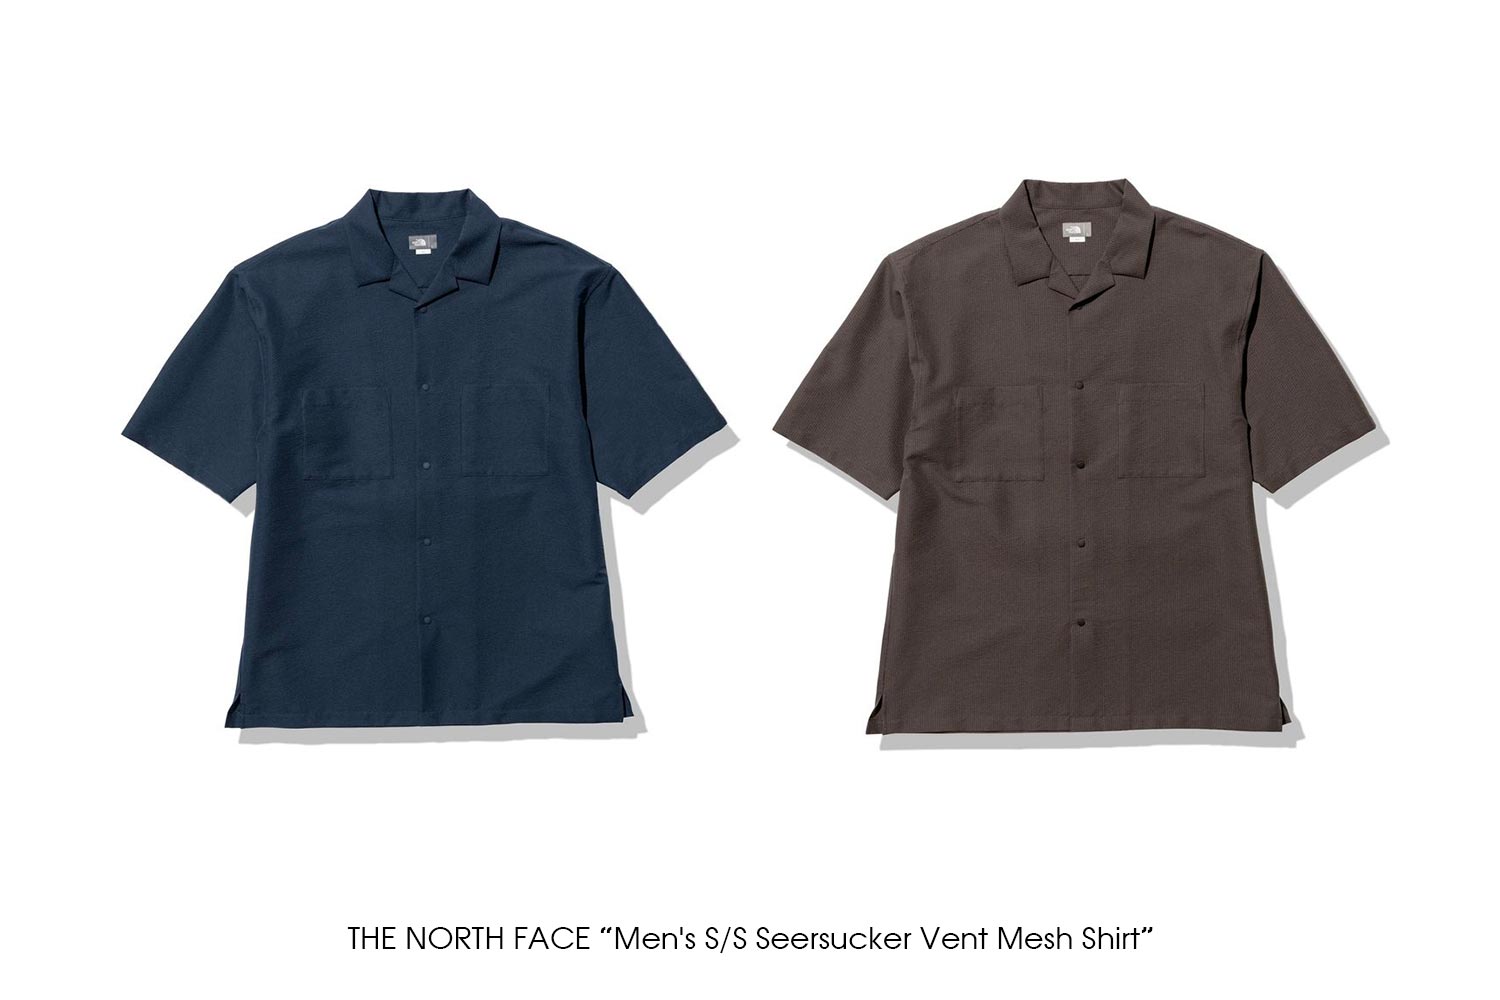 THE NORTH FACE "Men's S/S Seersucker Vent Mesh Shirt"